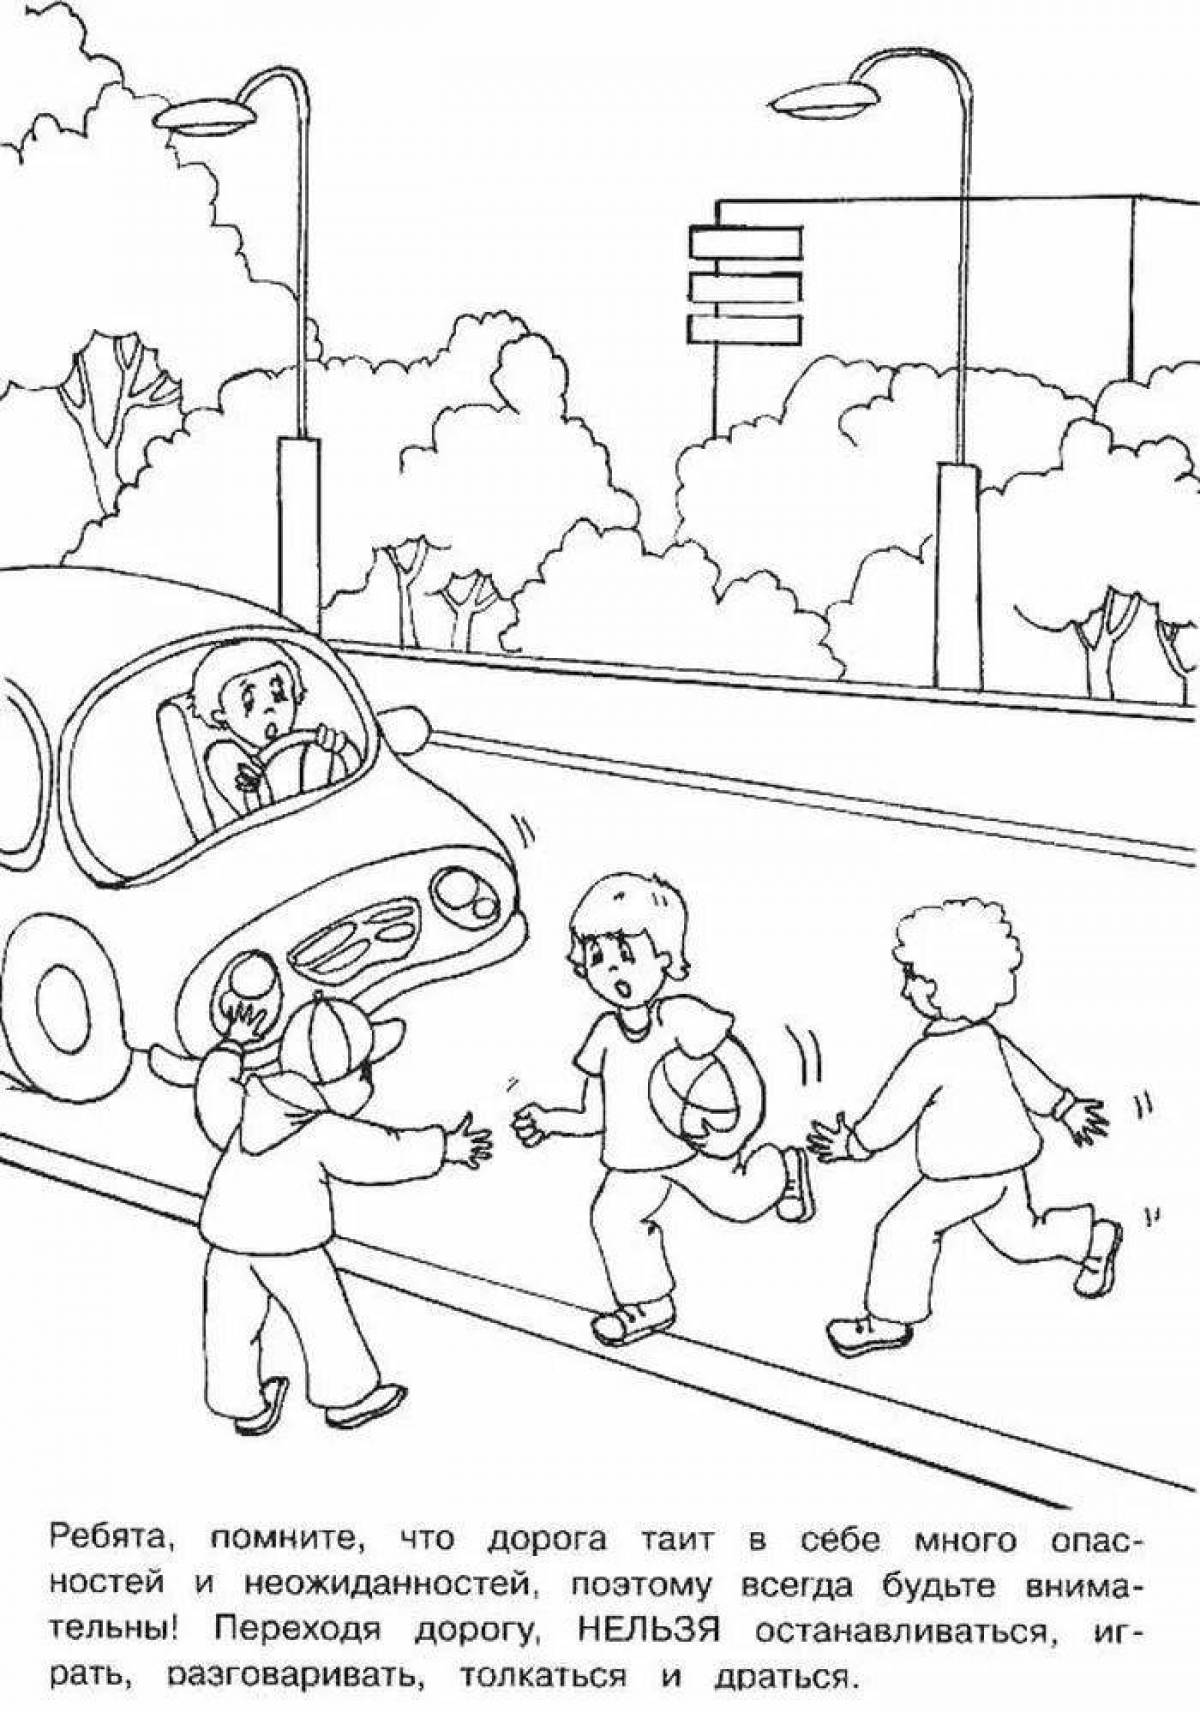 Привлекательная раскраска для правил дорожного движения в детском саду